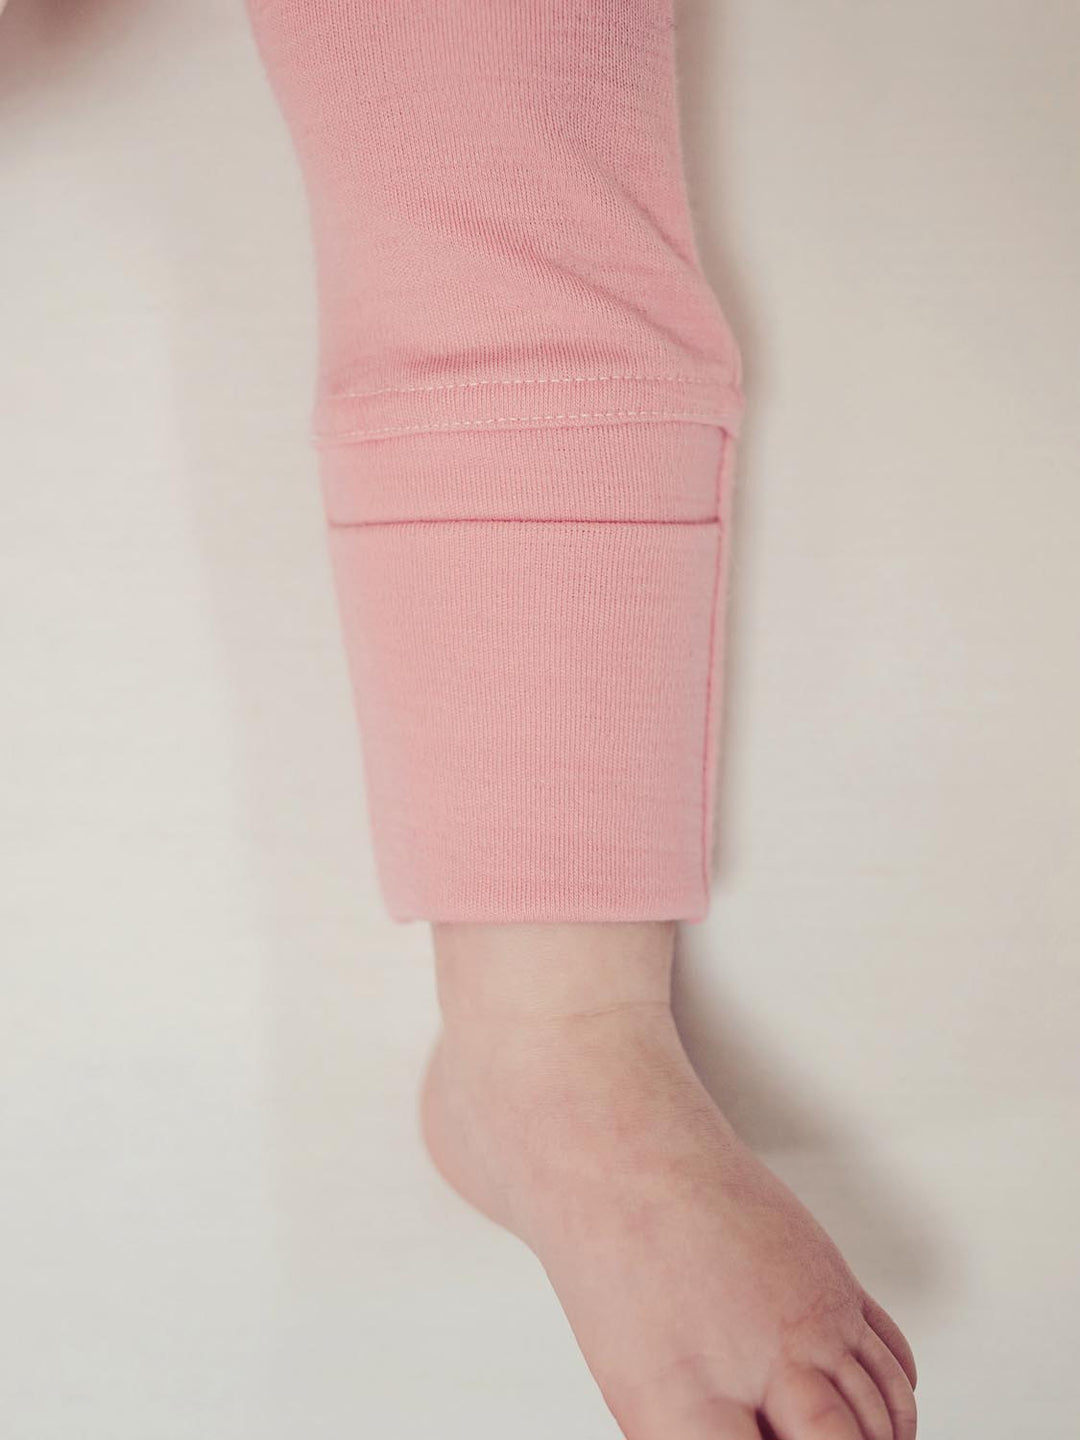 Merino Pattern Base Layer Legging - Amaranth Pink, Women's Ski Clothes